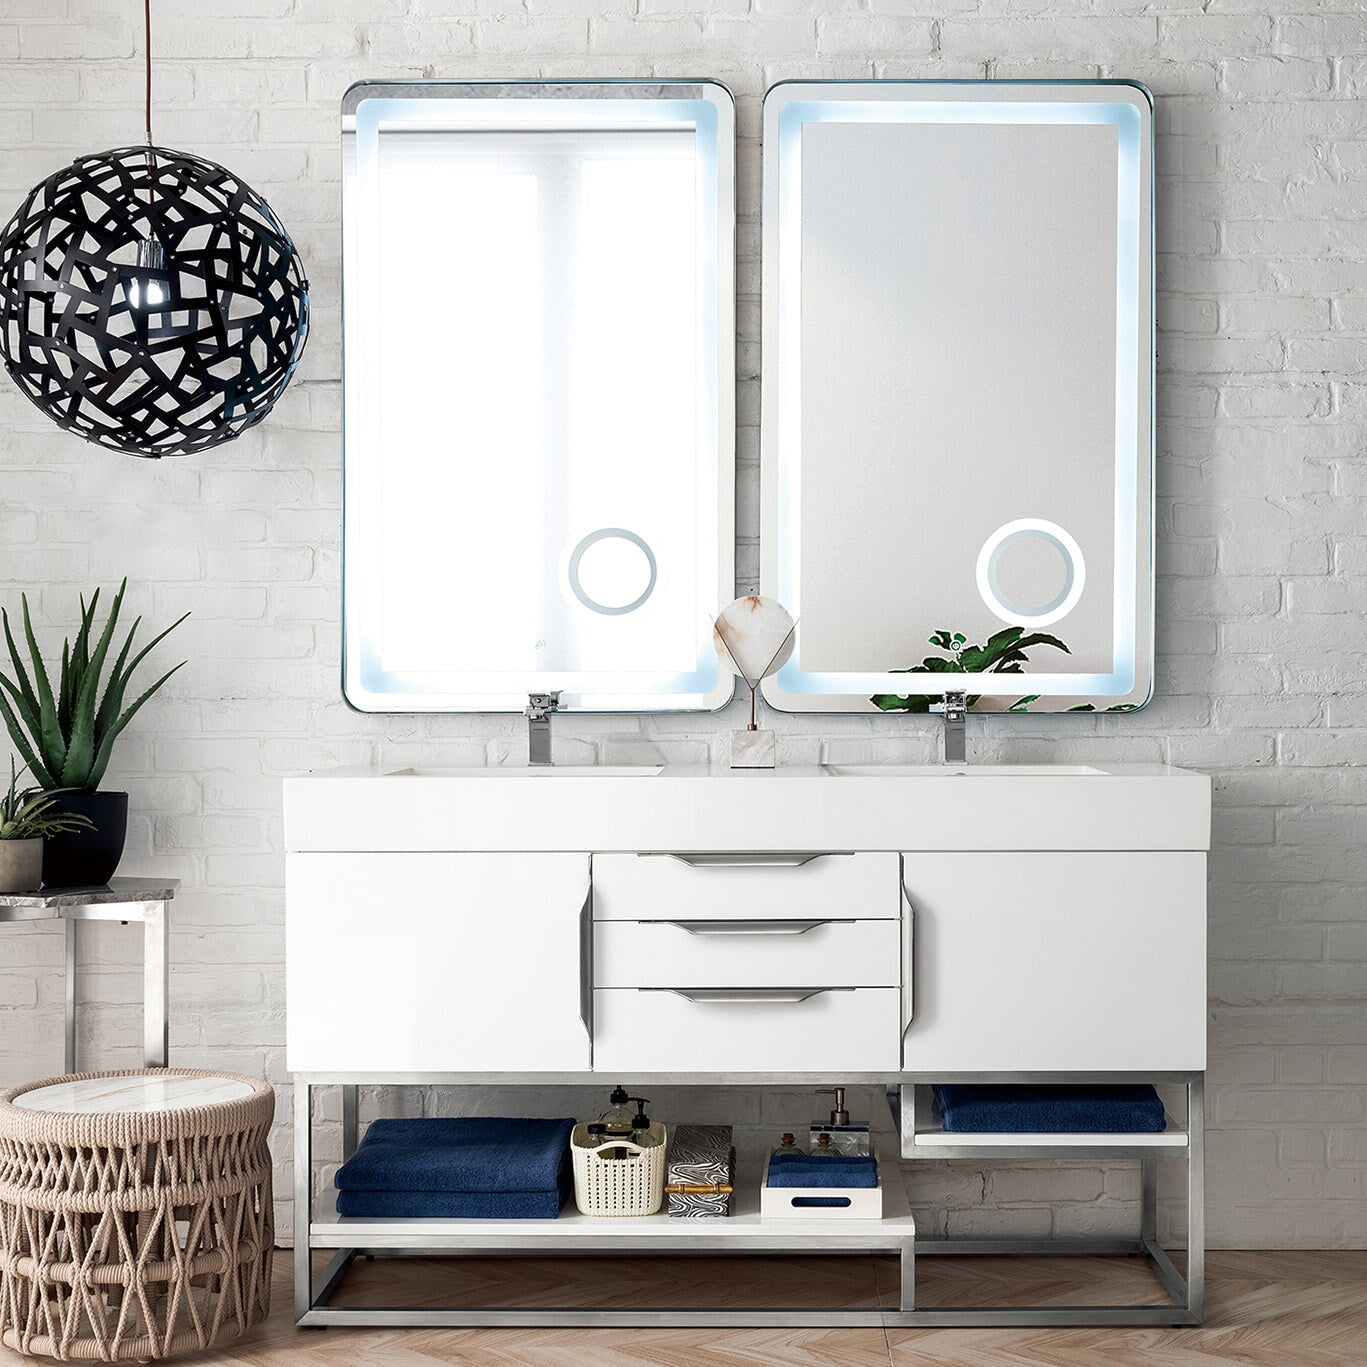 Columbia 59" Double Bathroom Vanity in Glossy White with Brushed Nickel Base Single Bathroom Vanity James Martin Vanities 